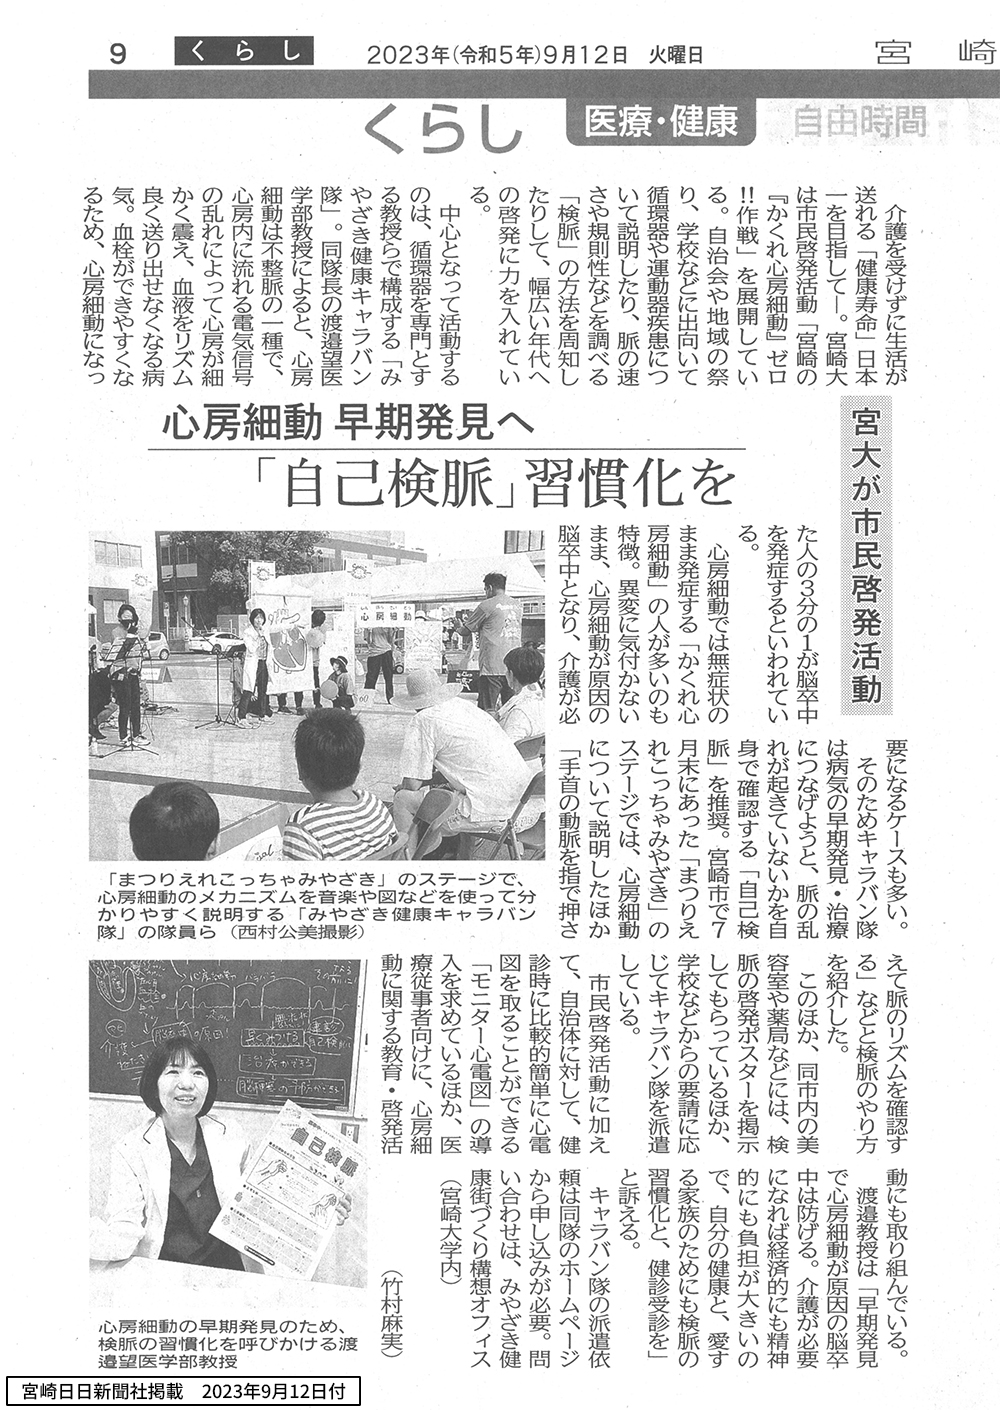 宮崎日日新聞にキャラバン隊の活動が掲載されました!